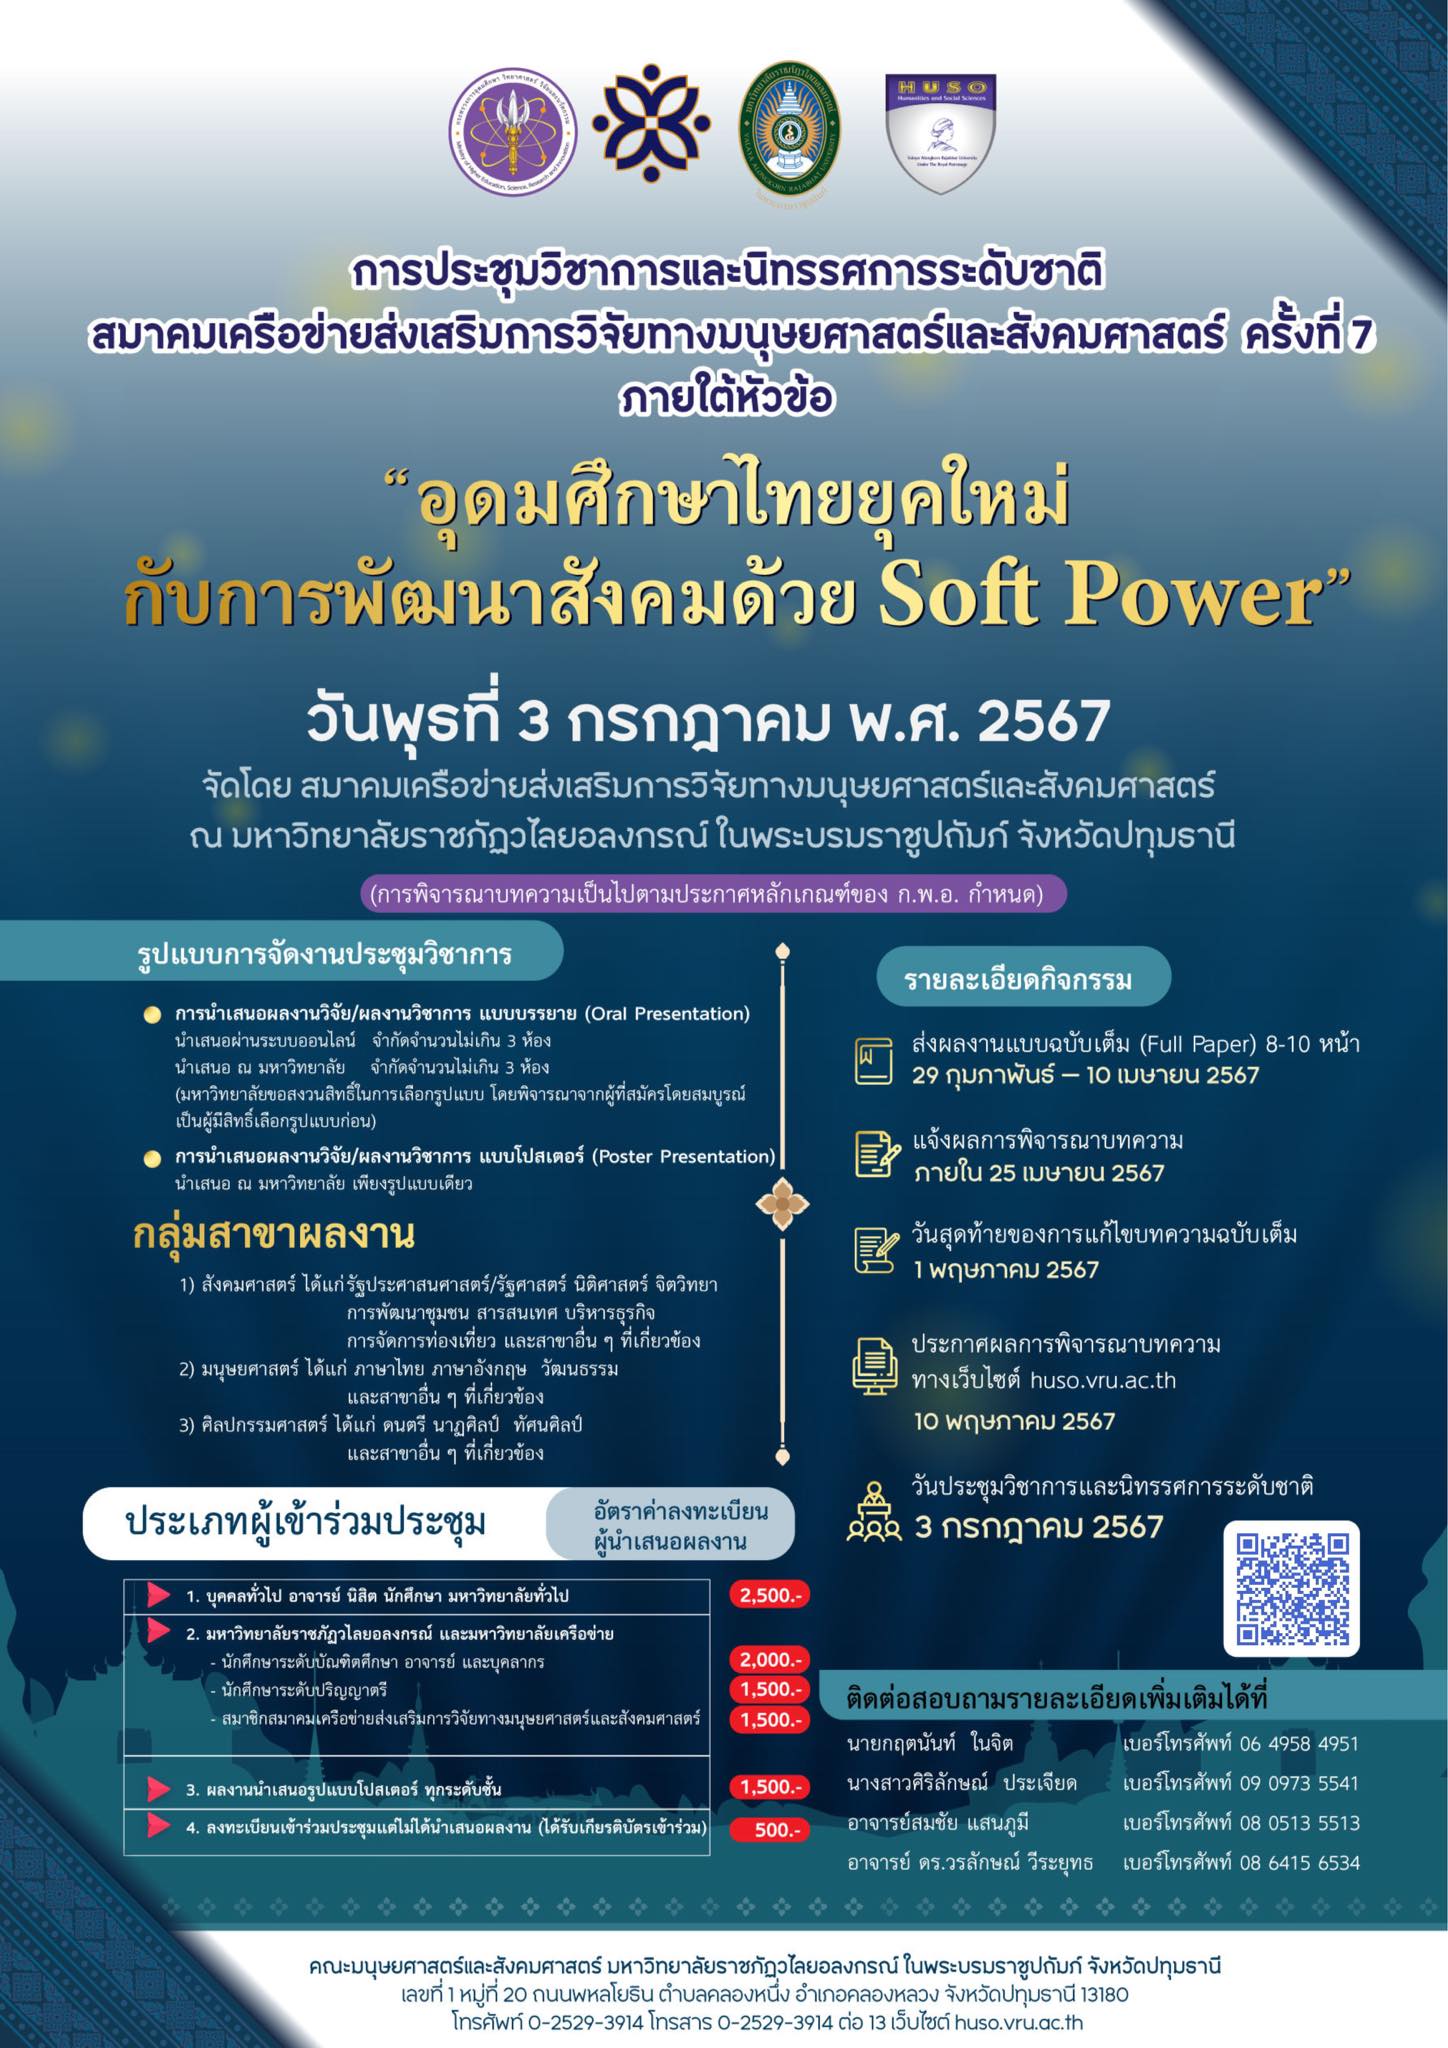 โครงการประชุมวิชาการและนิทรรศการระดับชาติ สมาคมเครือข่ายส่งเสริมการวิจัยทางมนุษยศาสตร์และสังคมศาสตร์ ครั้งที่ 7 ภายใต้หัวข้อ “อุดมศึกษาไทยยุคใหม่ กับการพัฒนาสังคมด้วย Soft Power”